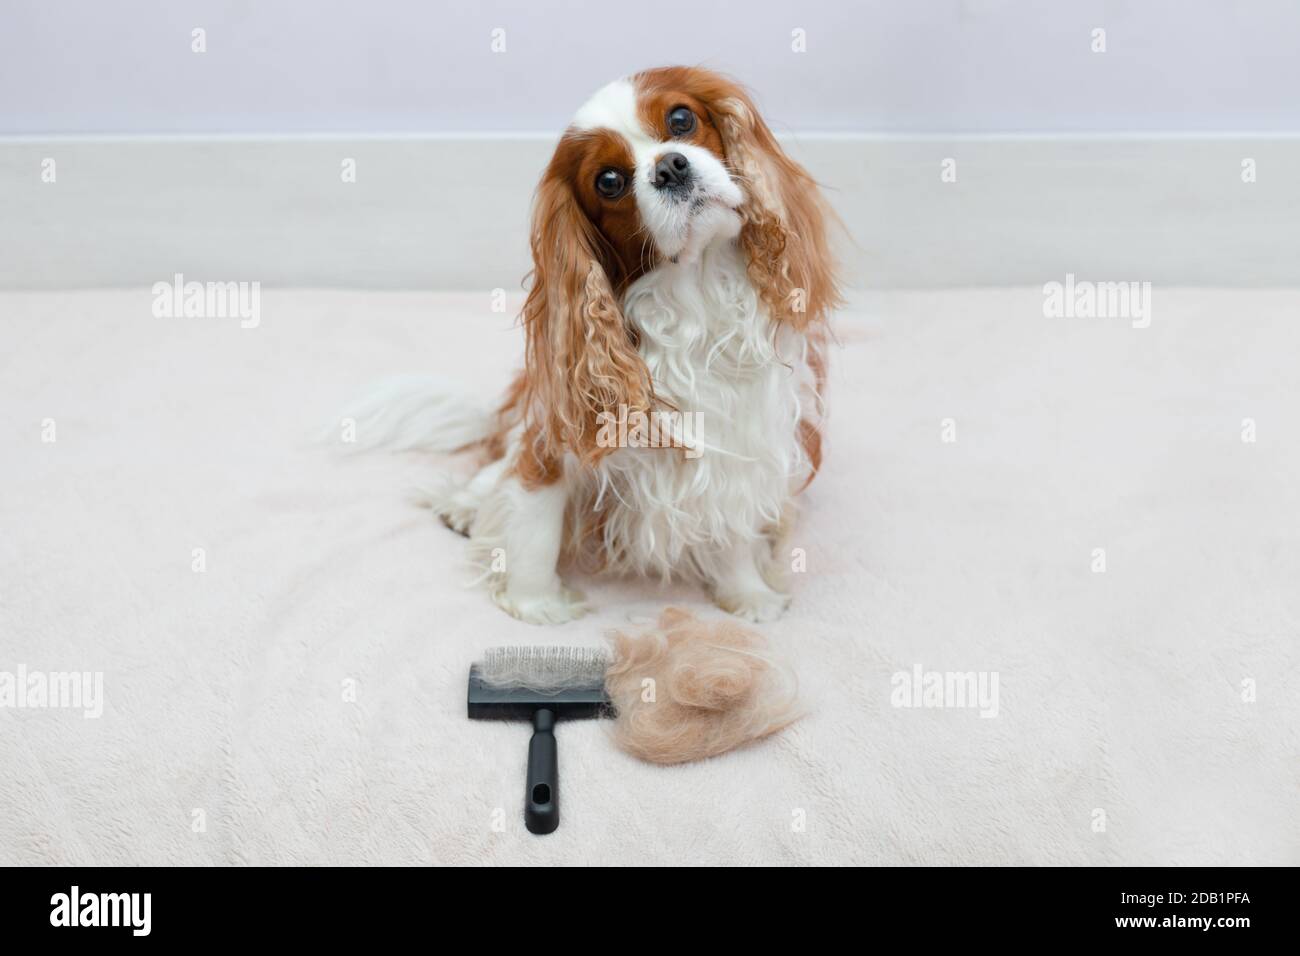 Hund Haustier Cavalier King Charles Spaniel schaut genau auf die Kamera nach dem Verfahren der Kämmen mit einem Tierpinsel. Kämmen von Wolle, Häuten bei Tieren Stockfoto